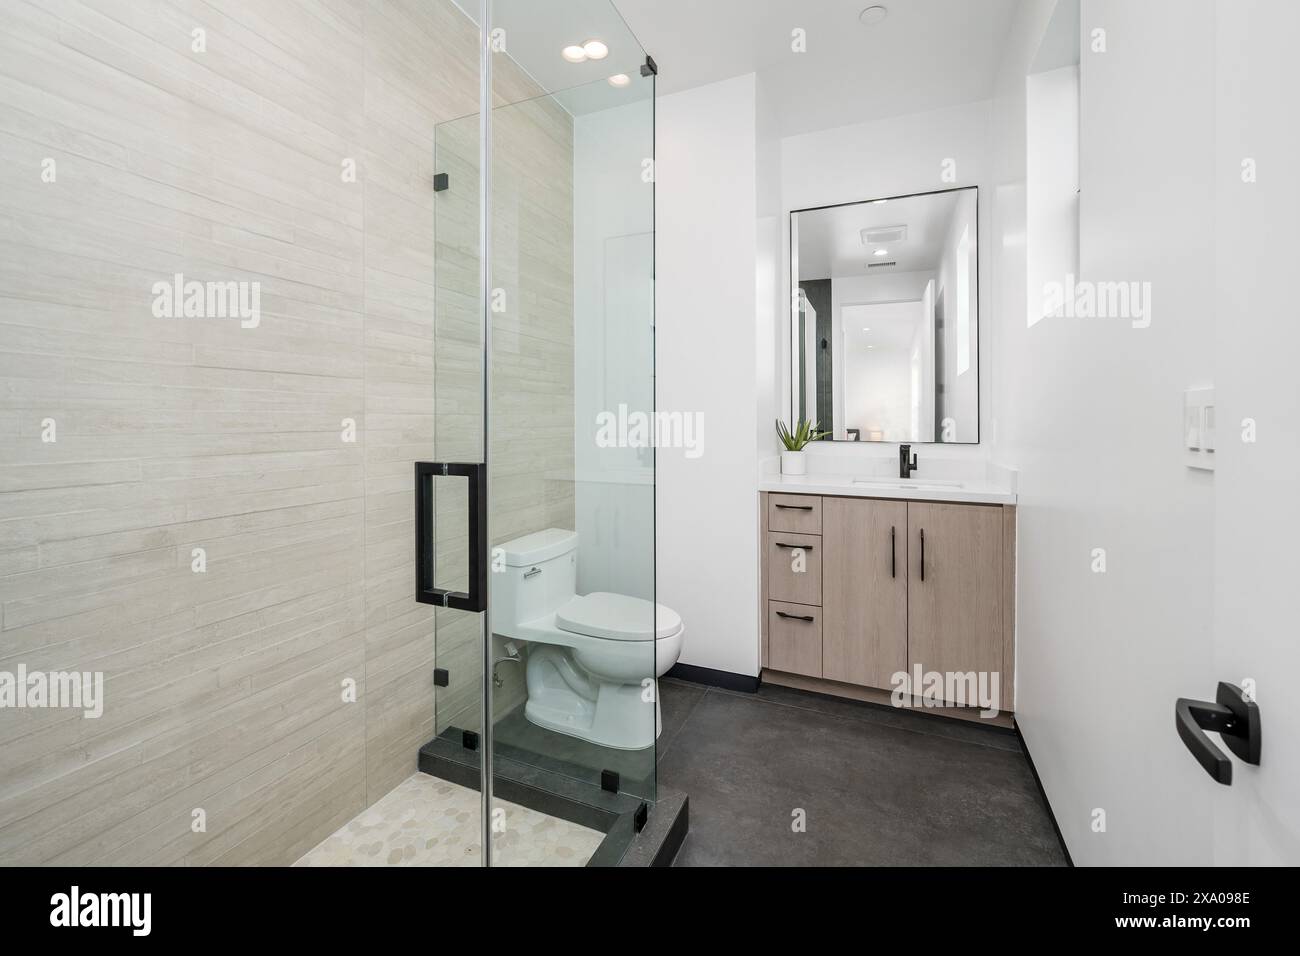 Bagno moderno con pareti in vetro e spaziosa cabina doccia Foto Stock